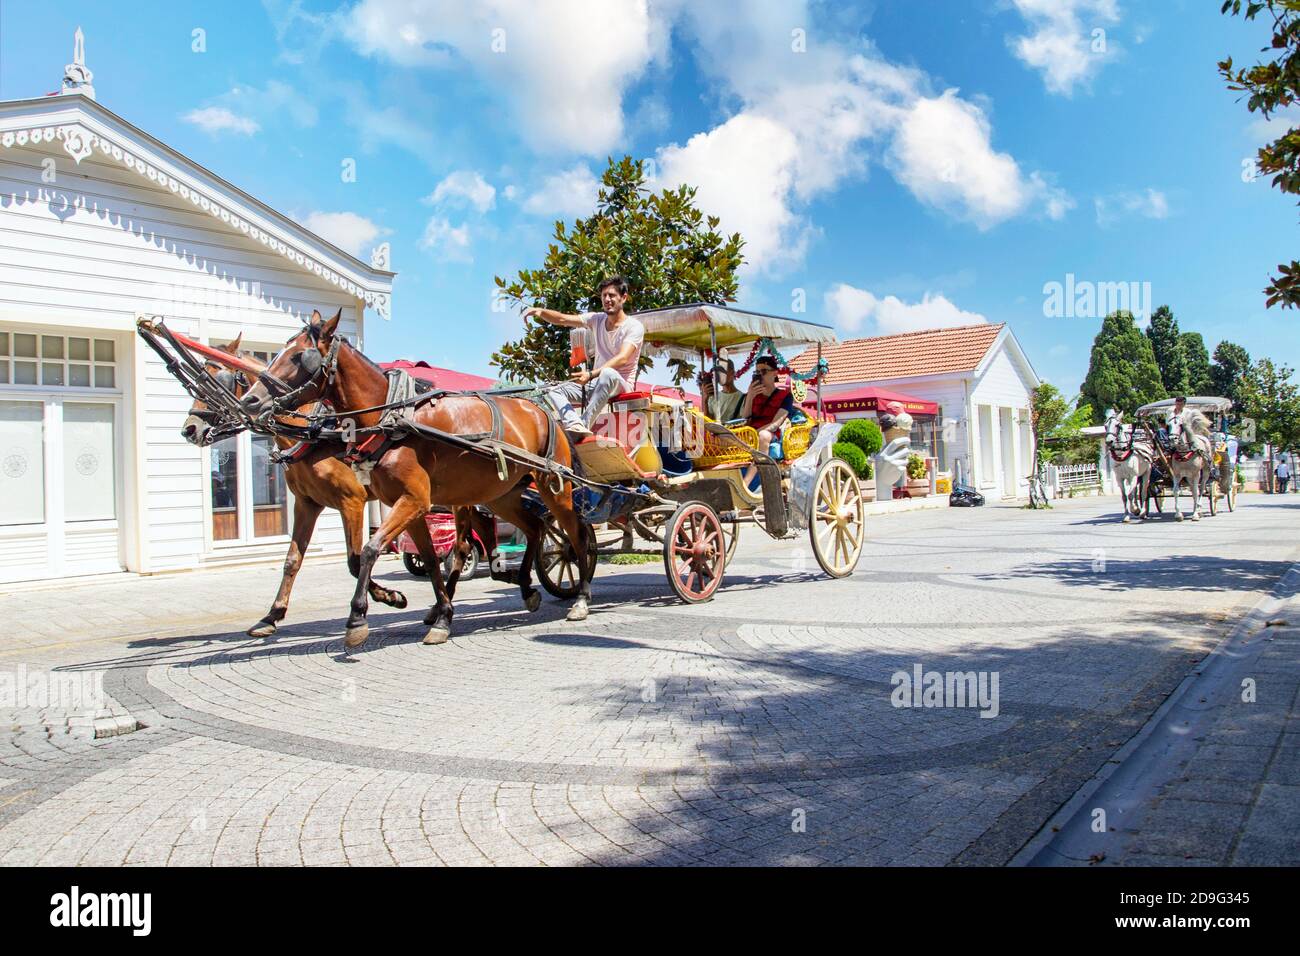 BUYUKADA, TURQUIE, JULLY 26 2019, cheval et calèche aux îles Princes Buyuk ada, Istanbul, Turquie. Visite de Phaeton dans les îles Prince. Turc connu sous le nom Banque D'Images